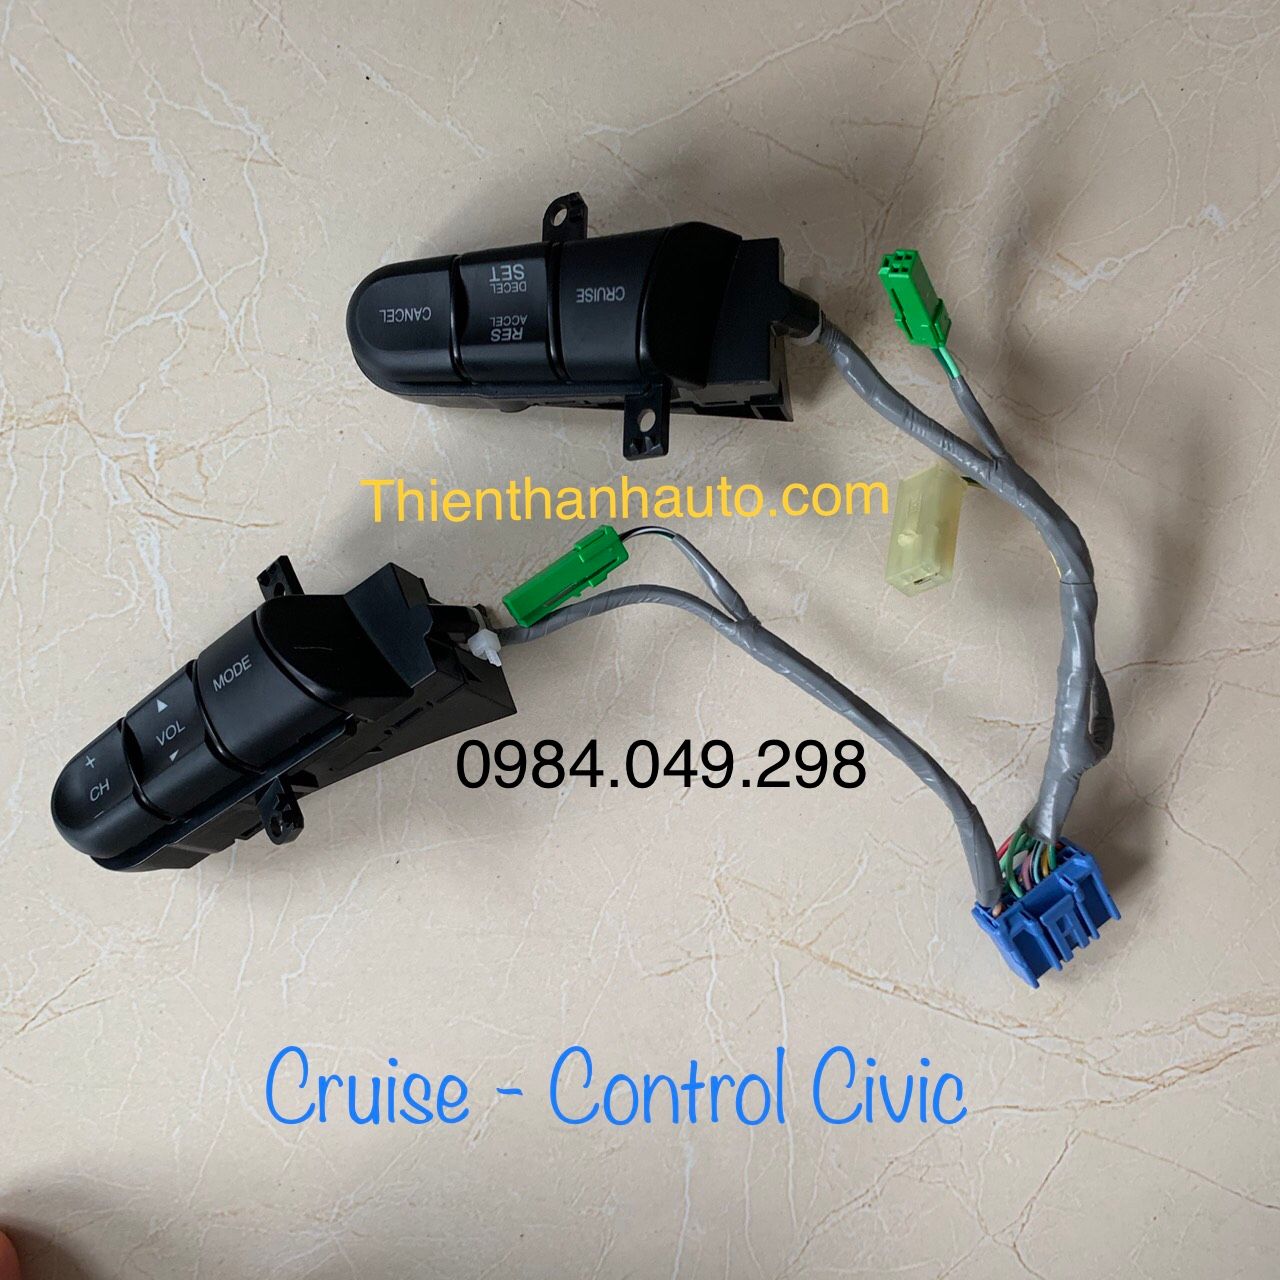 Cruise Control và bộ điều khiển tích hợp vô lăng Honda Civic chất lượng cao, giá tốt nhất - Thienthanhauto.com